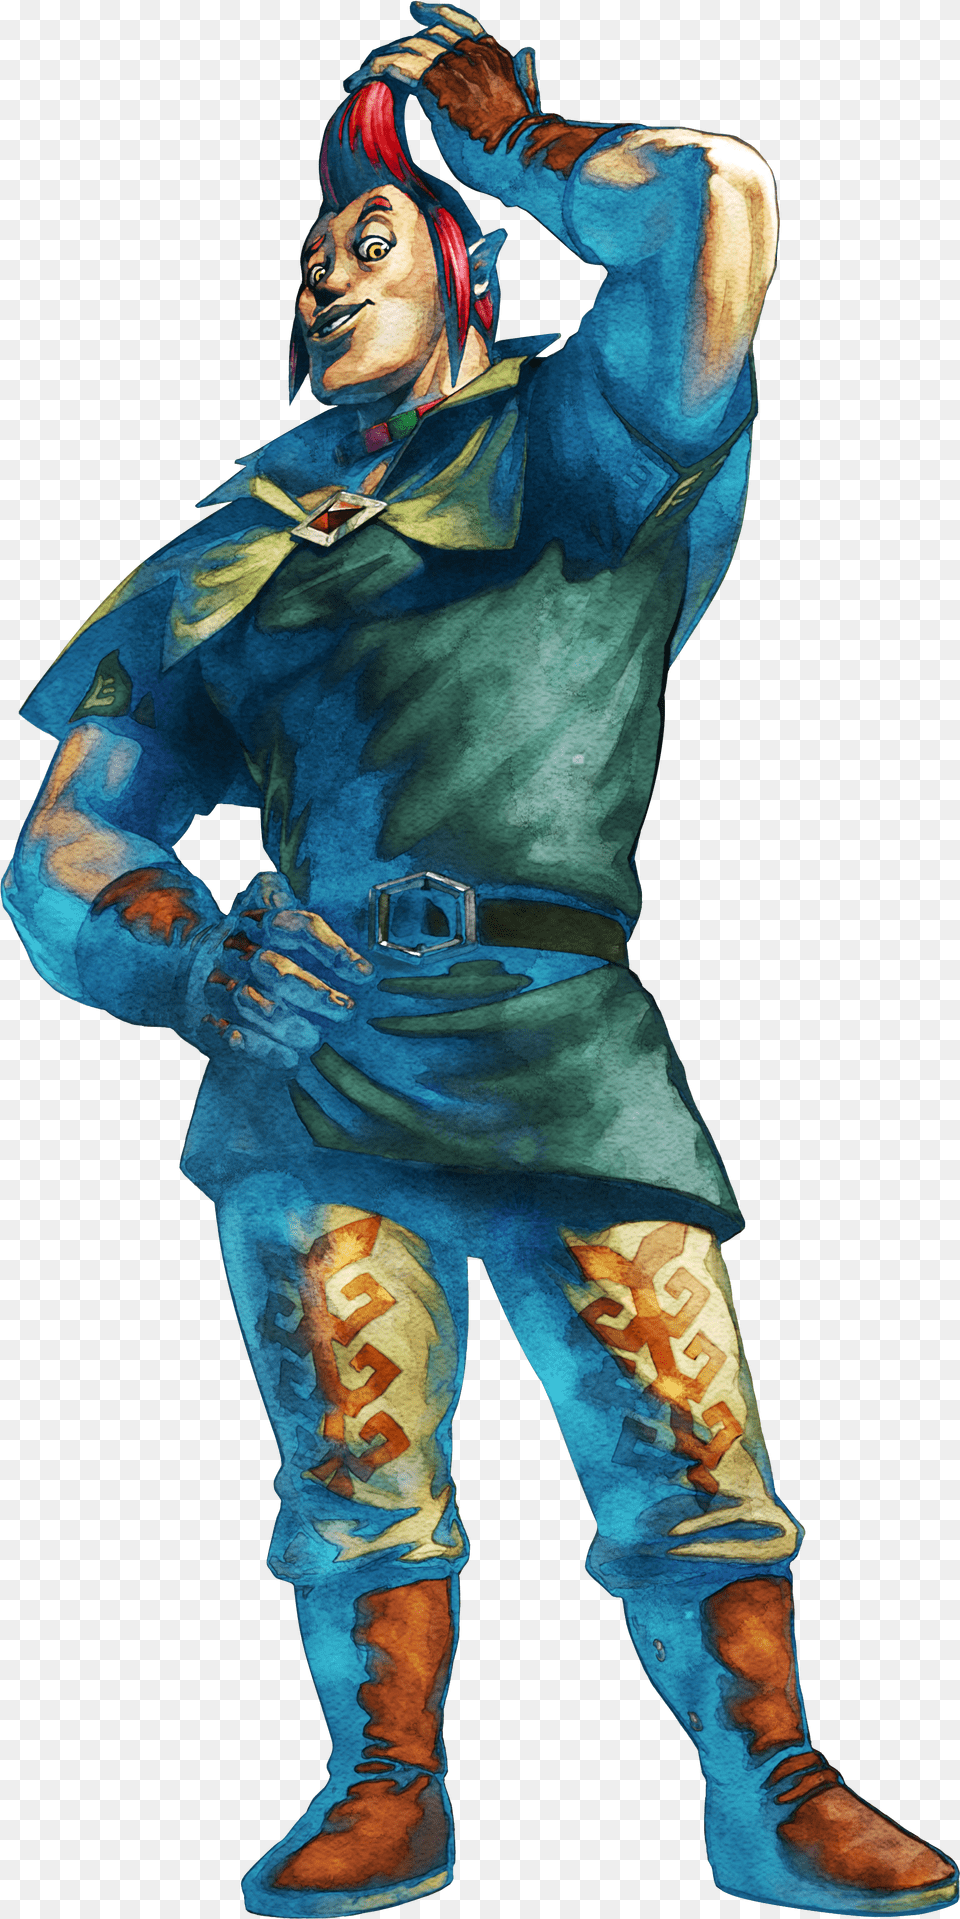 Legend Of Zelda Skyward Sword Characters Png Image